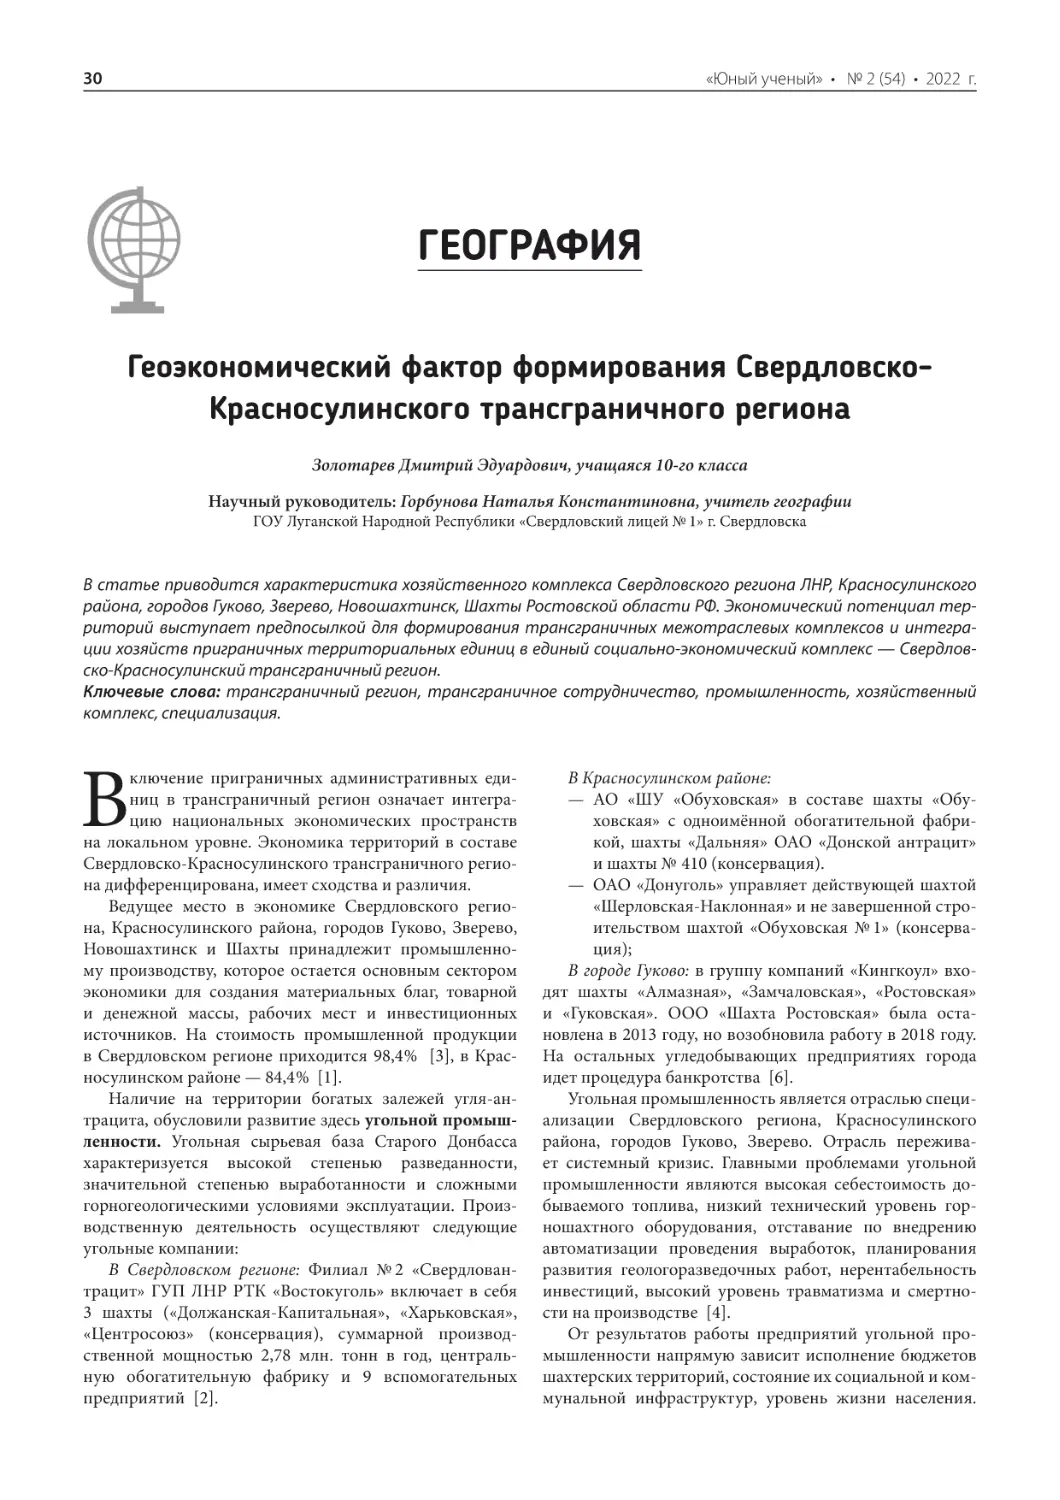 География
Геоэкономический фактор формирования Свердловско-Красносулинского трансграничного региона